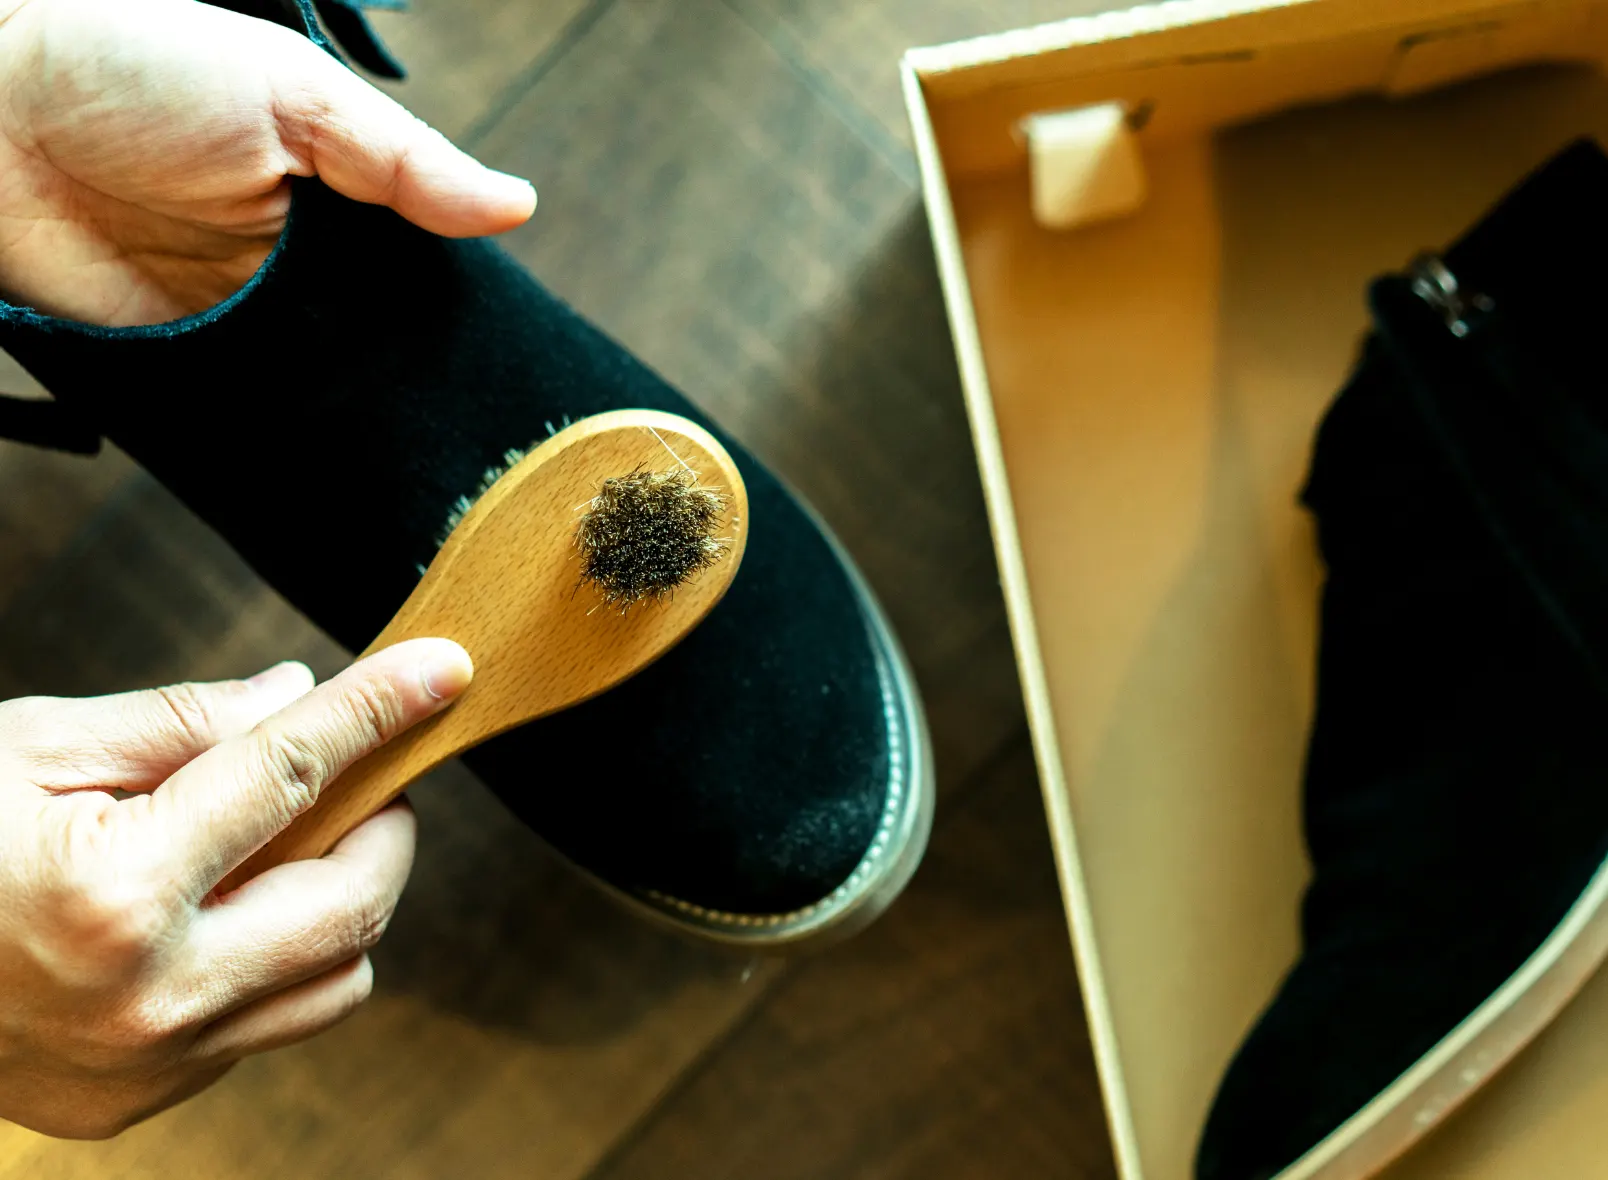 Najnovije muške zimske cipele koje će osvojiti muški zimski izgled. Očarajte sa svojim muškim zimskim cipelama i upotpunite svoj zimski stil!